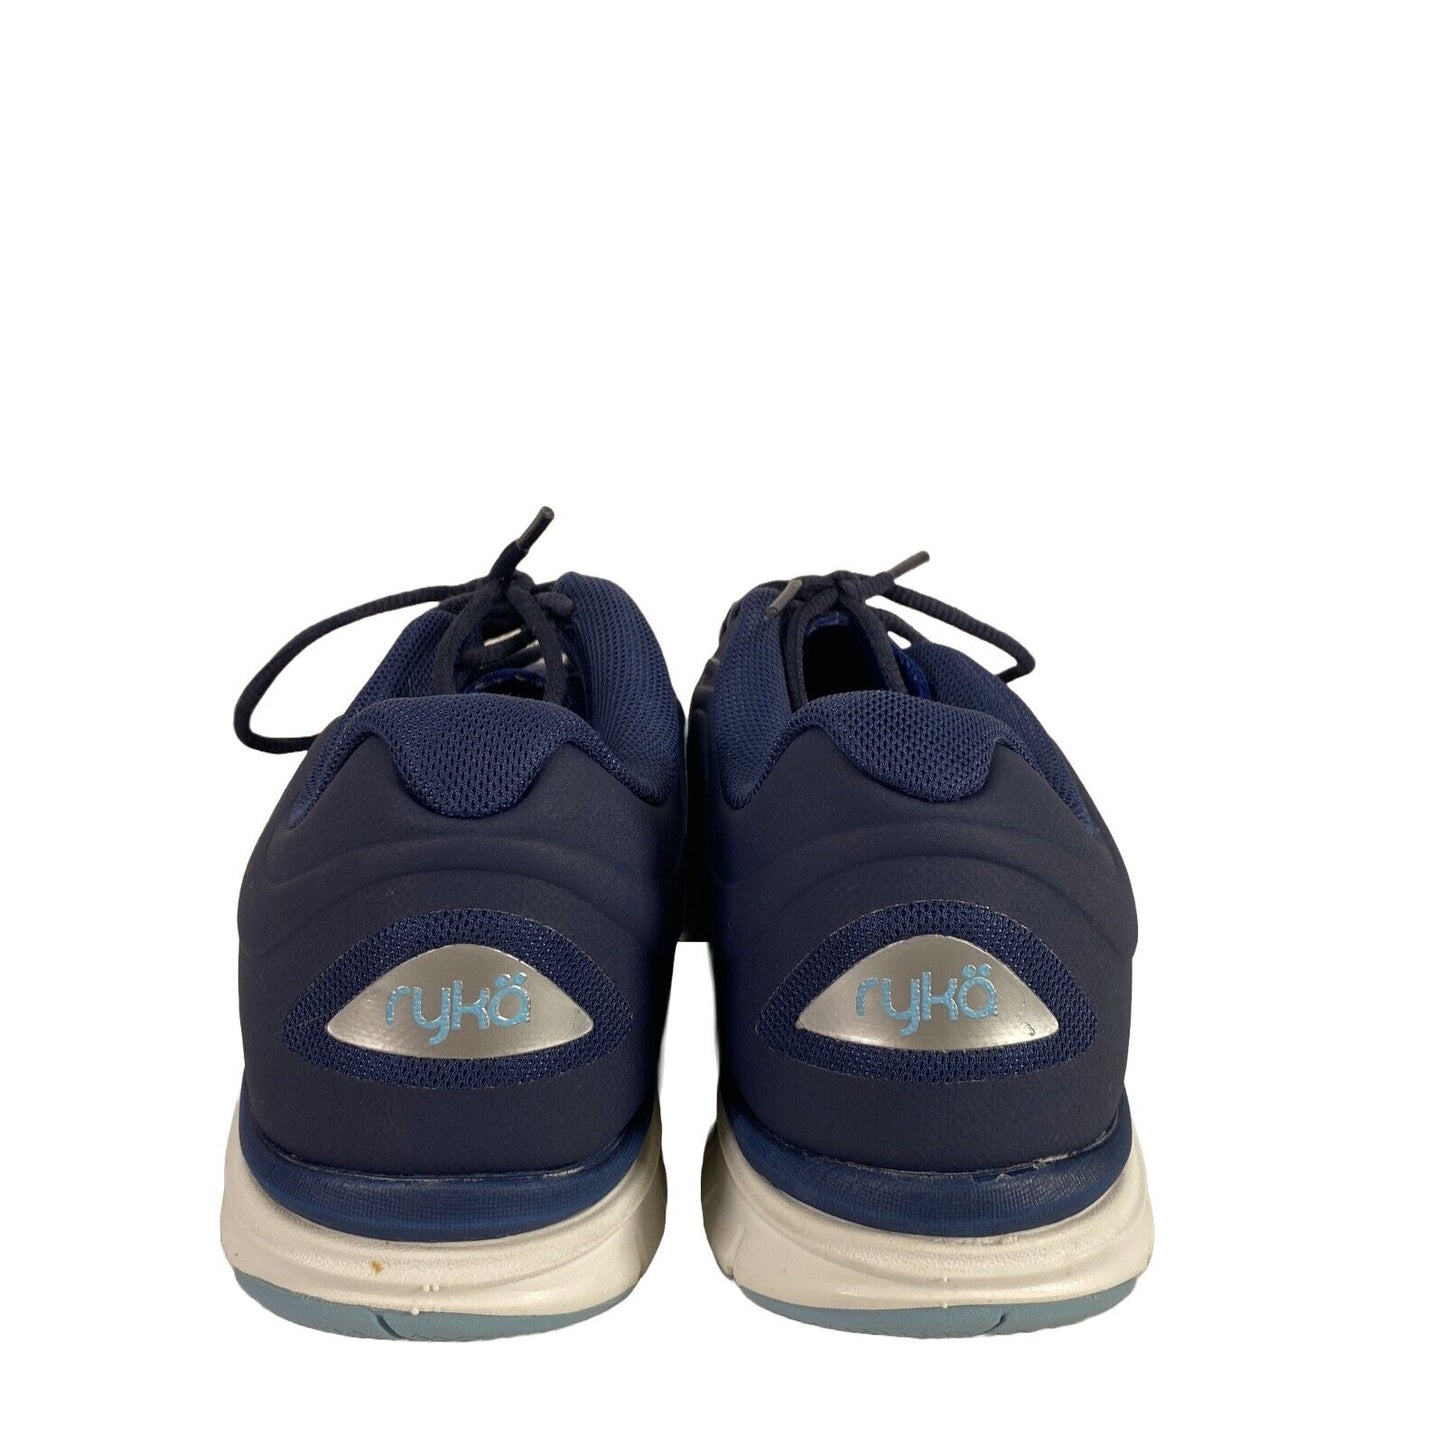 Ryka Women's Blue Ortholite Dynamic 2.5 Athletic Shoes - 8.5